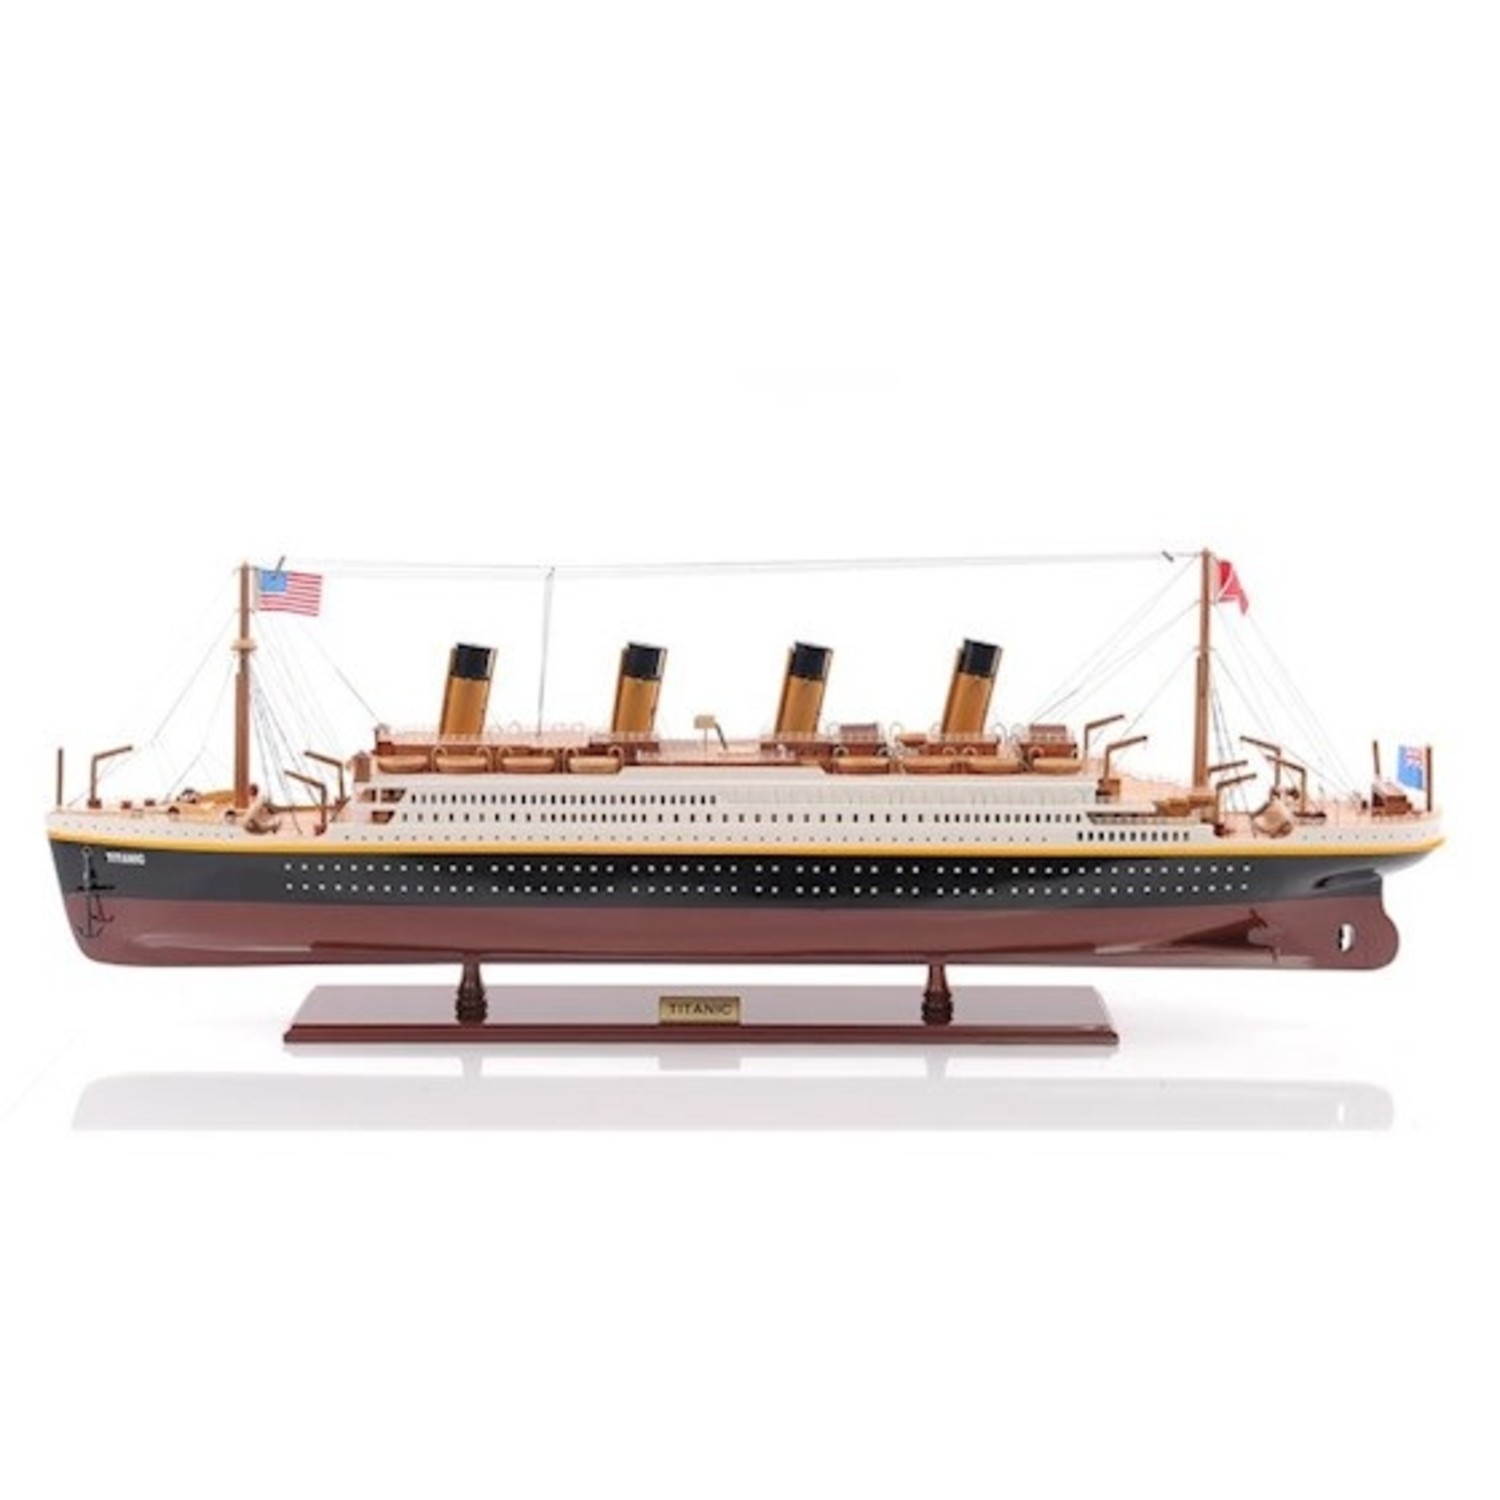 Retoucheren JEP Bijdrage Titanic model boot | Handgemaakt | Eliassen.nl - Eliassen Home & Garden  Pleasure